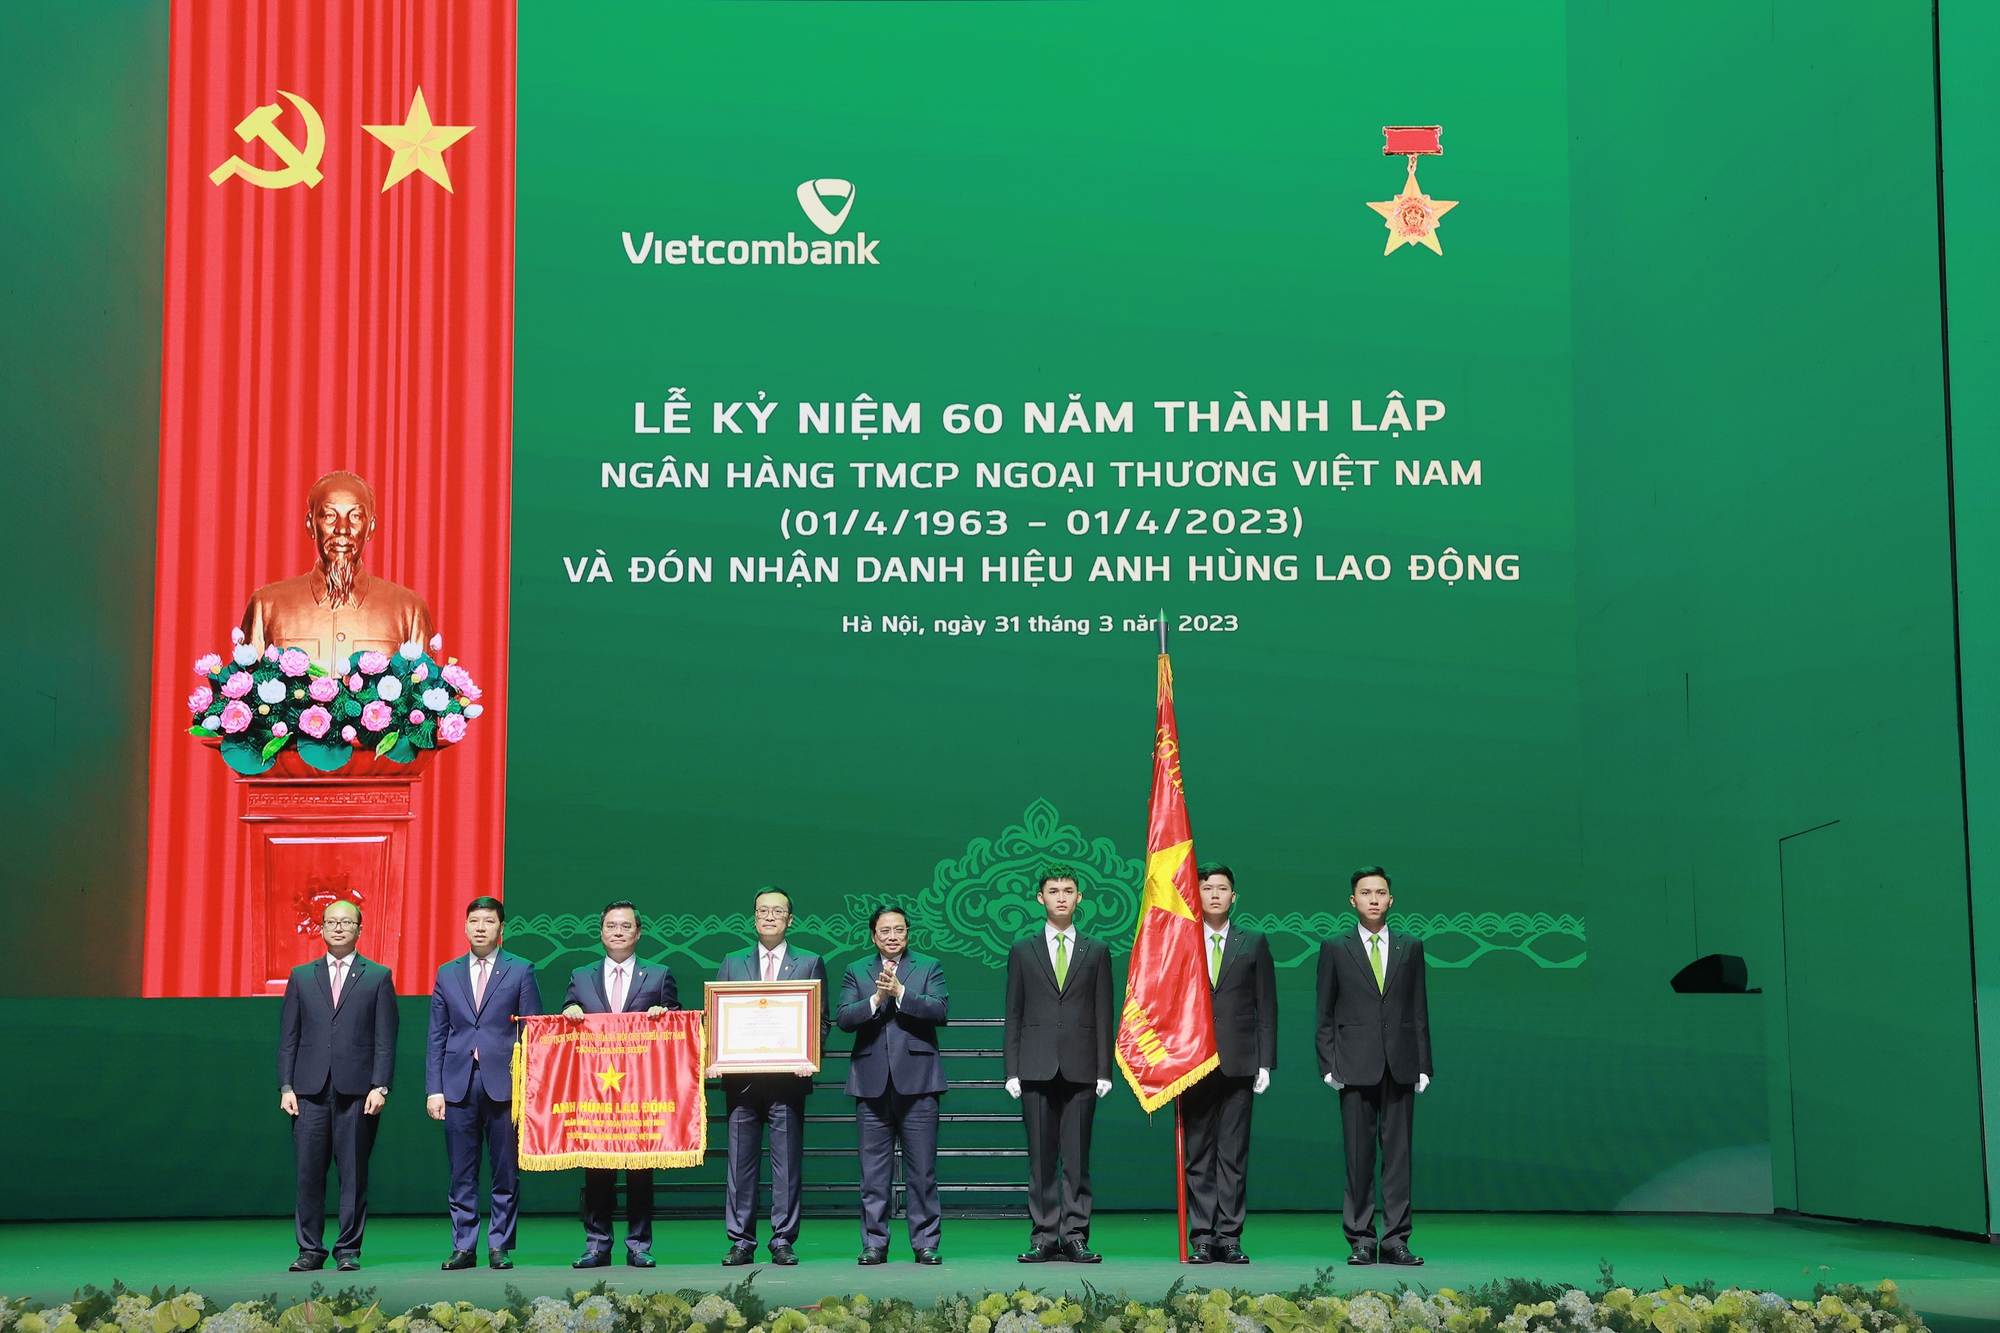 Vietcombank nhận danh hiệu Anh hùng Lao động dịp 60 năm thành lập - Ảnh 1.